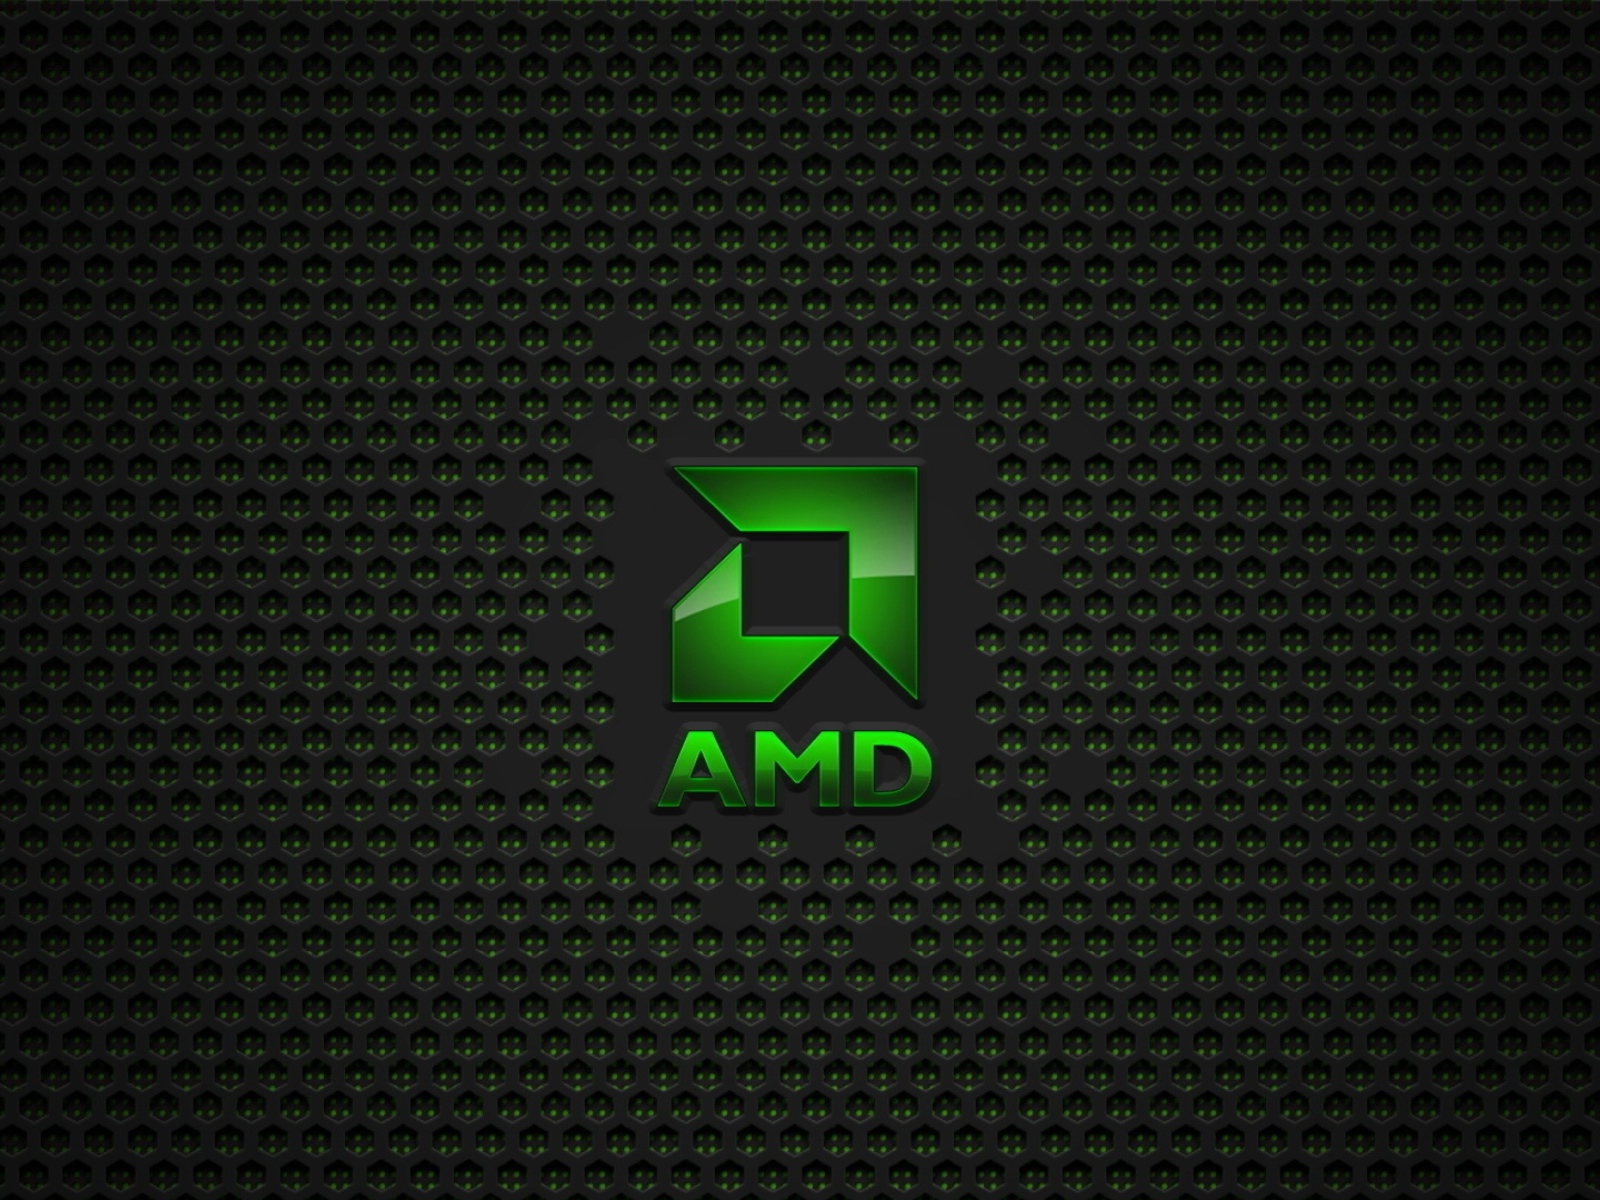 Зеленый значок AMD на сетчатом фоне